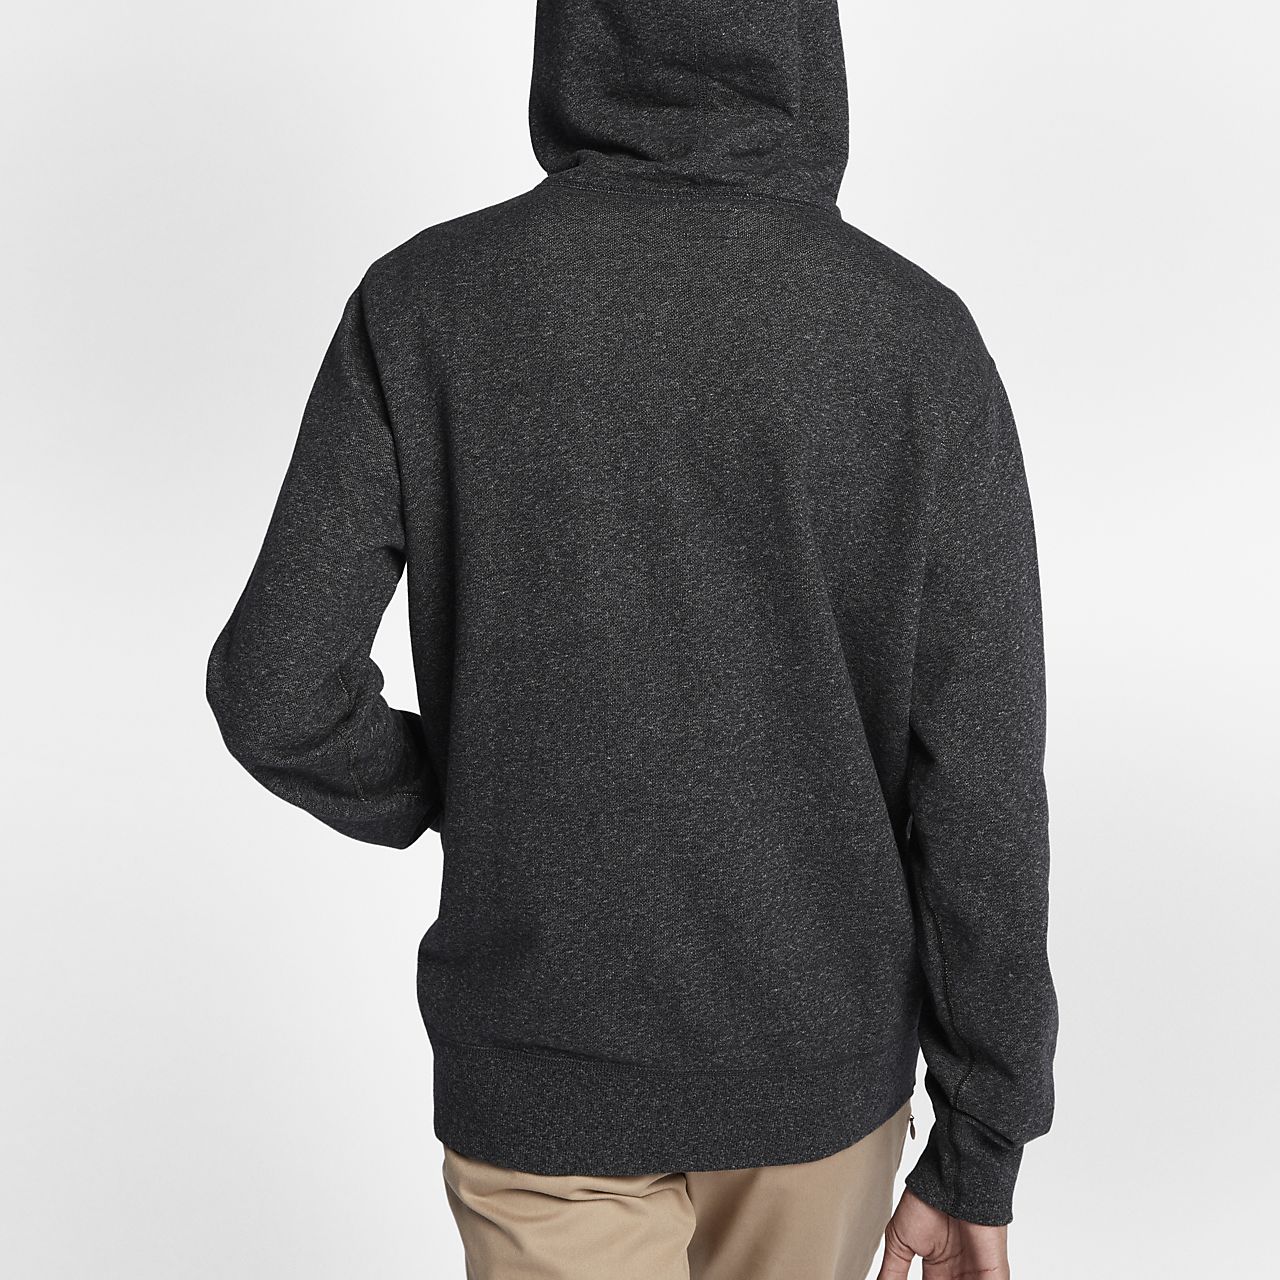 mens grey converse hoodie